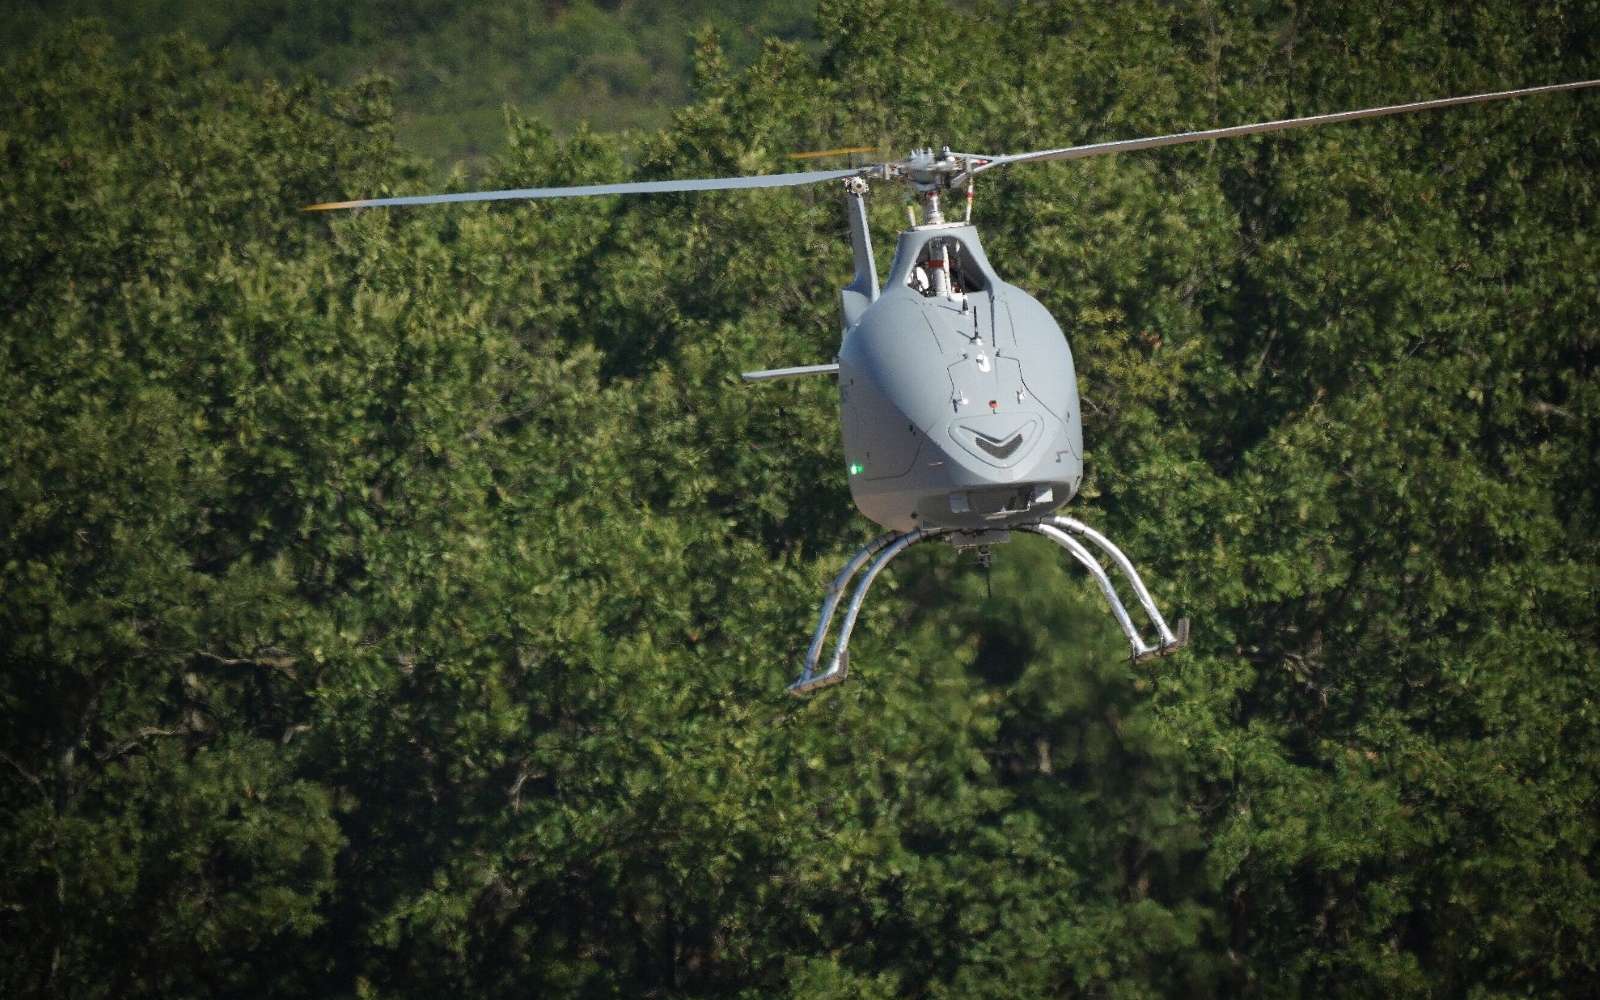 Basé sur un hélicoptère biplace populaire, le drone VSR700 devrait équiper la Marine nationale dans les prochaines années. © Airbus